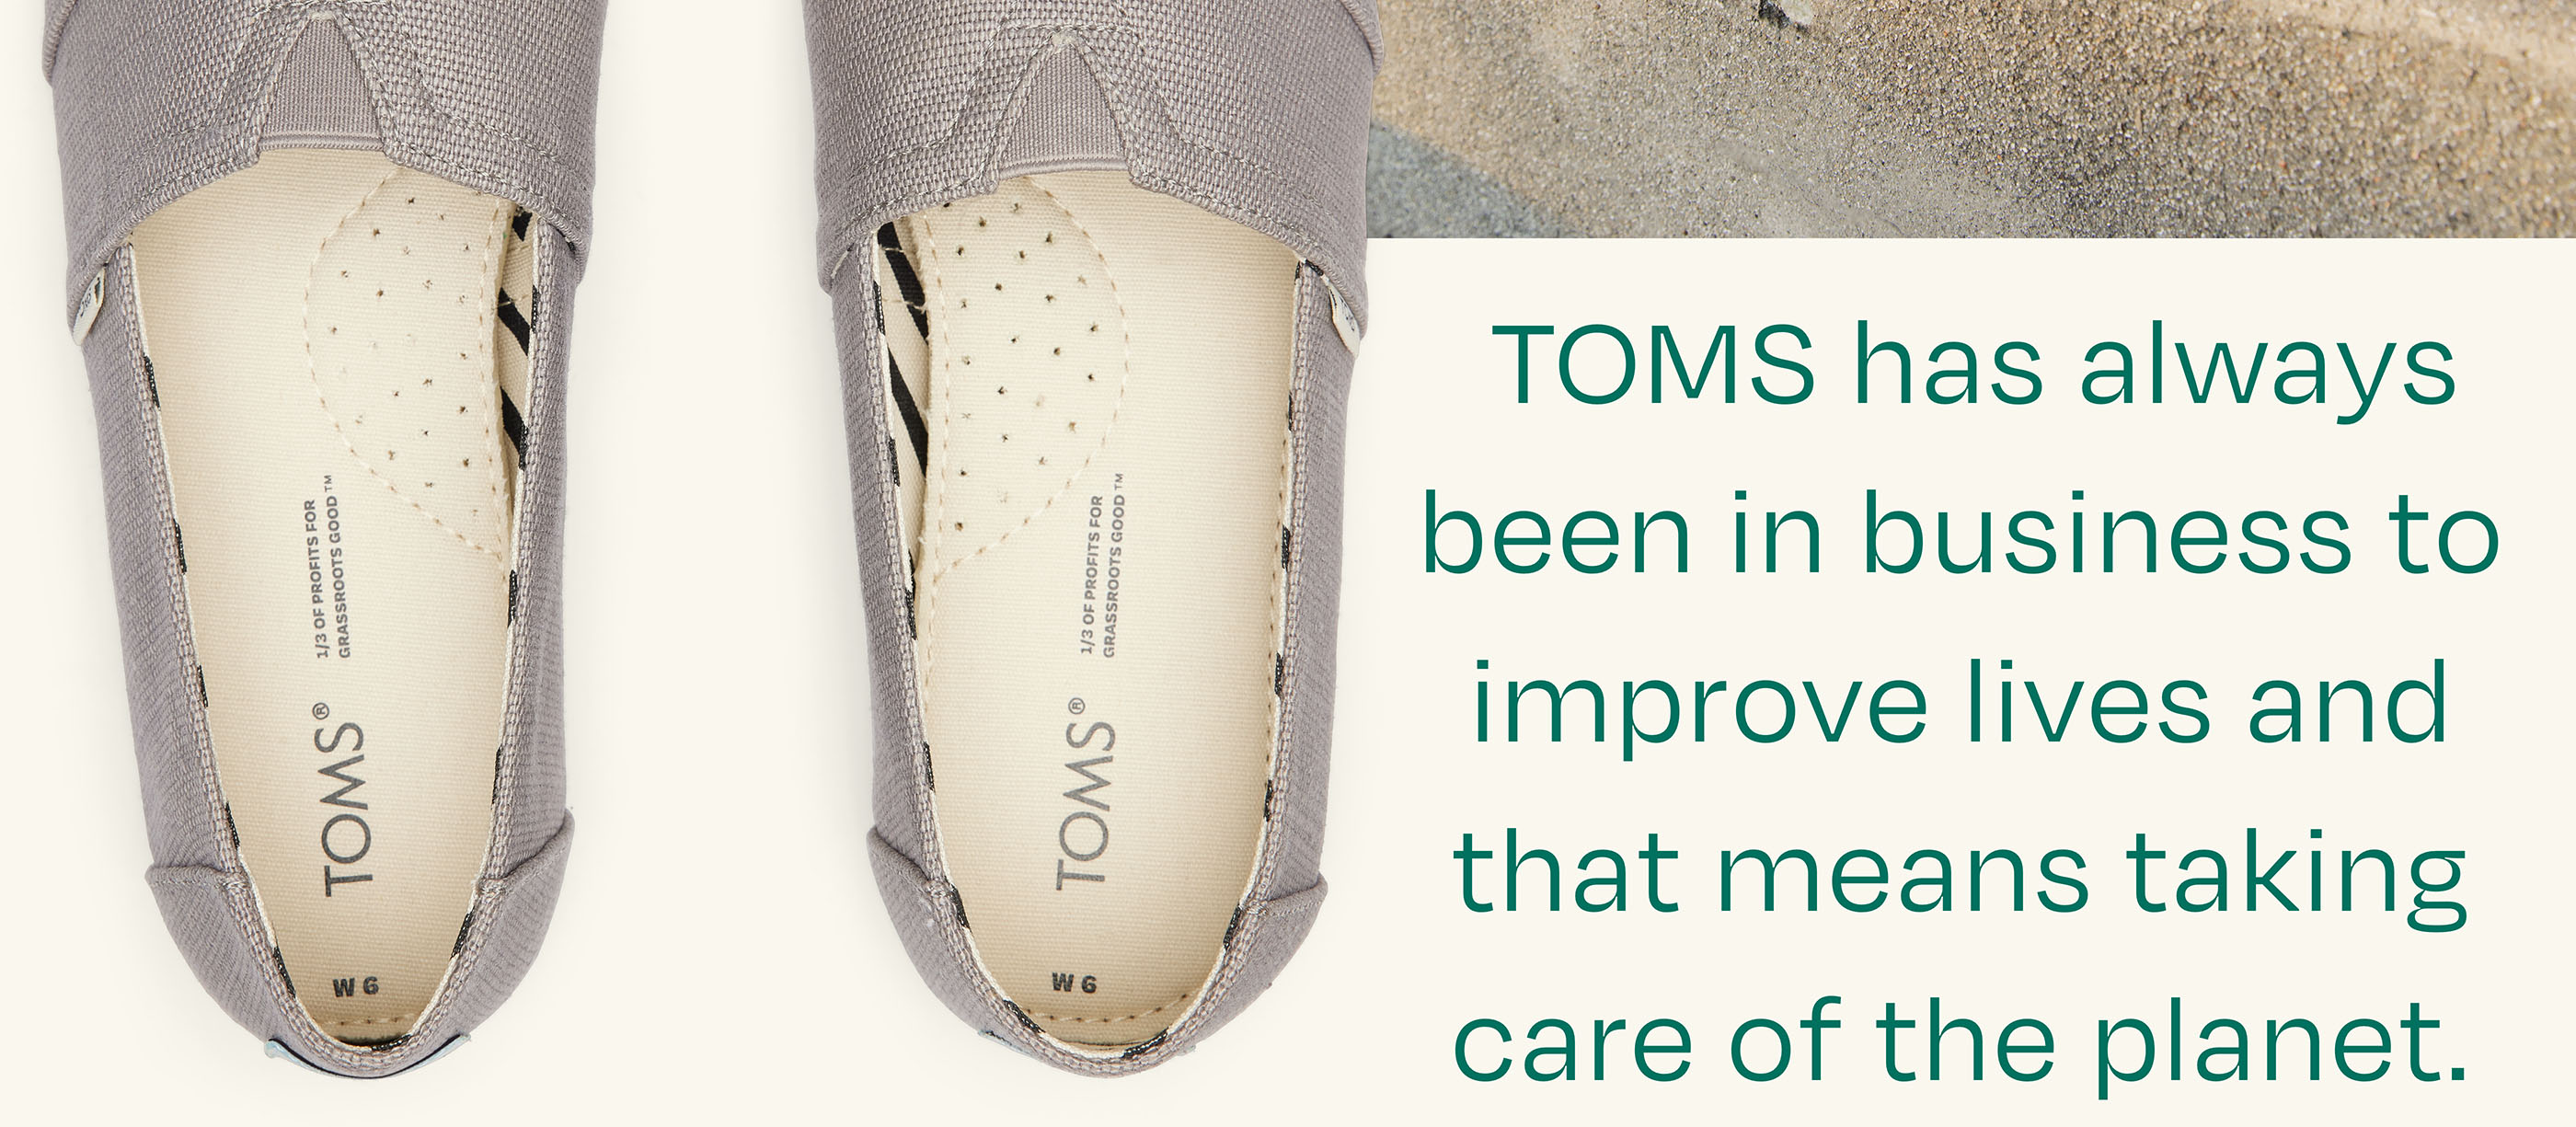 Details about   Toms Classic Pale Mauve Heritage Canvas Womens Espadrilles Shoes